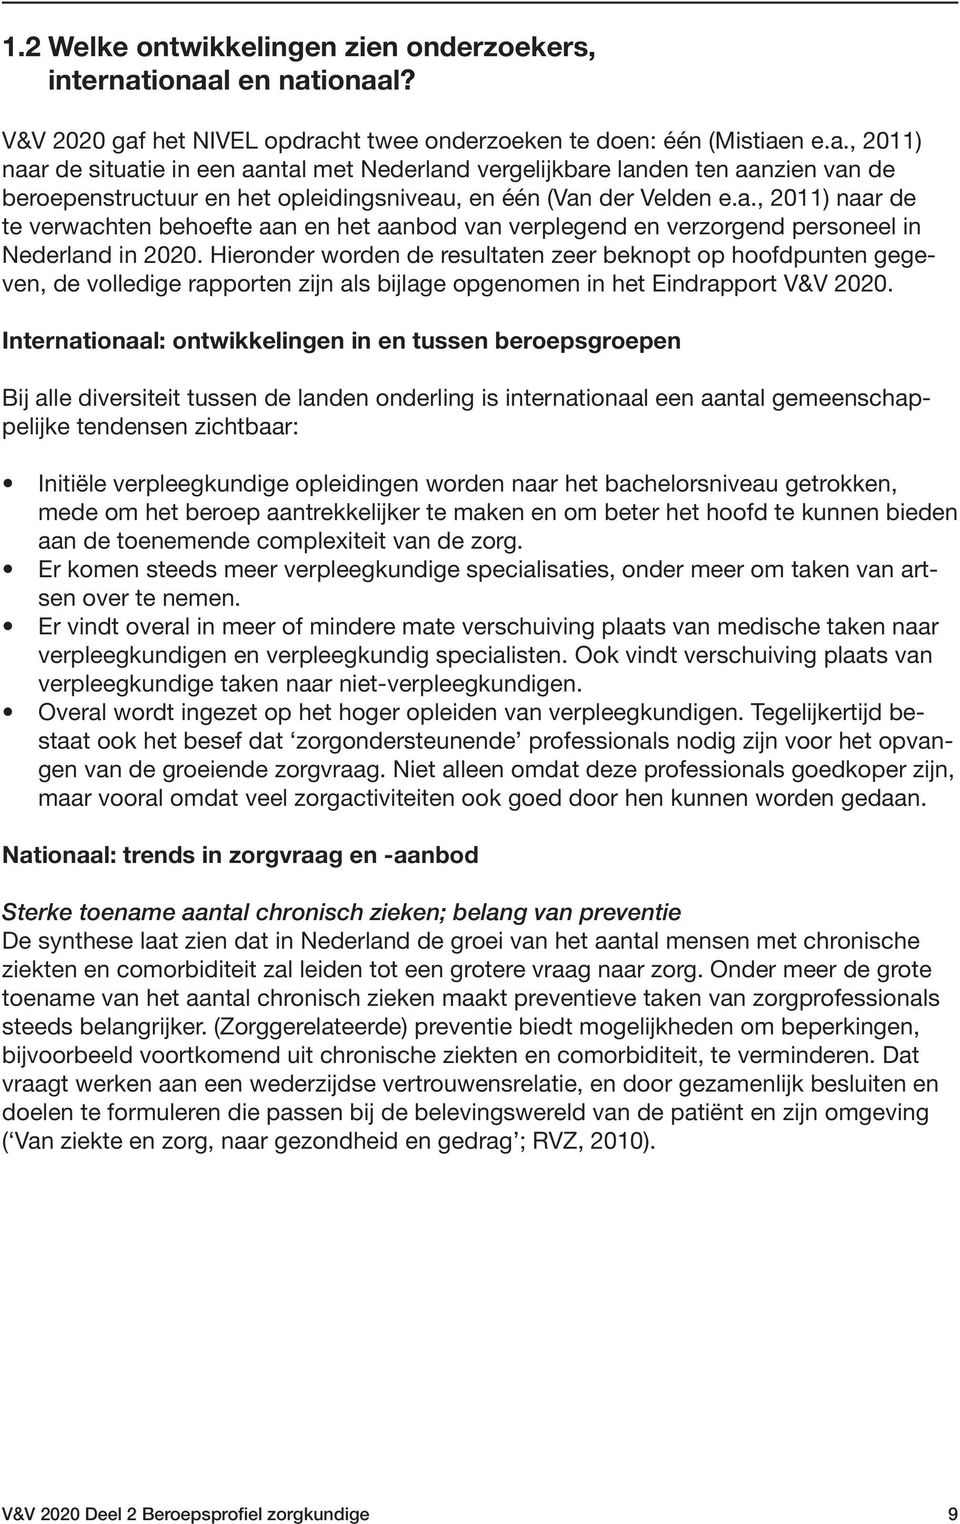 a., 2011) naar de te verwachten behoefte aan en het aanbod van verplegend en verzorgend personeel in Nederland in 2020.